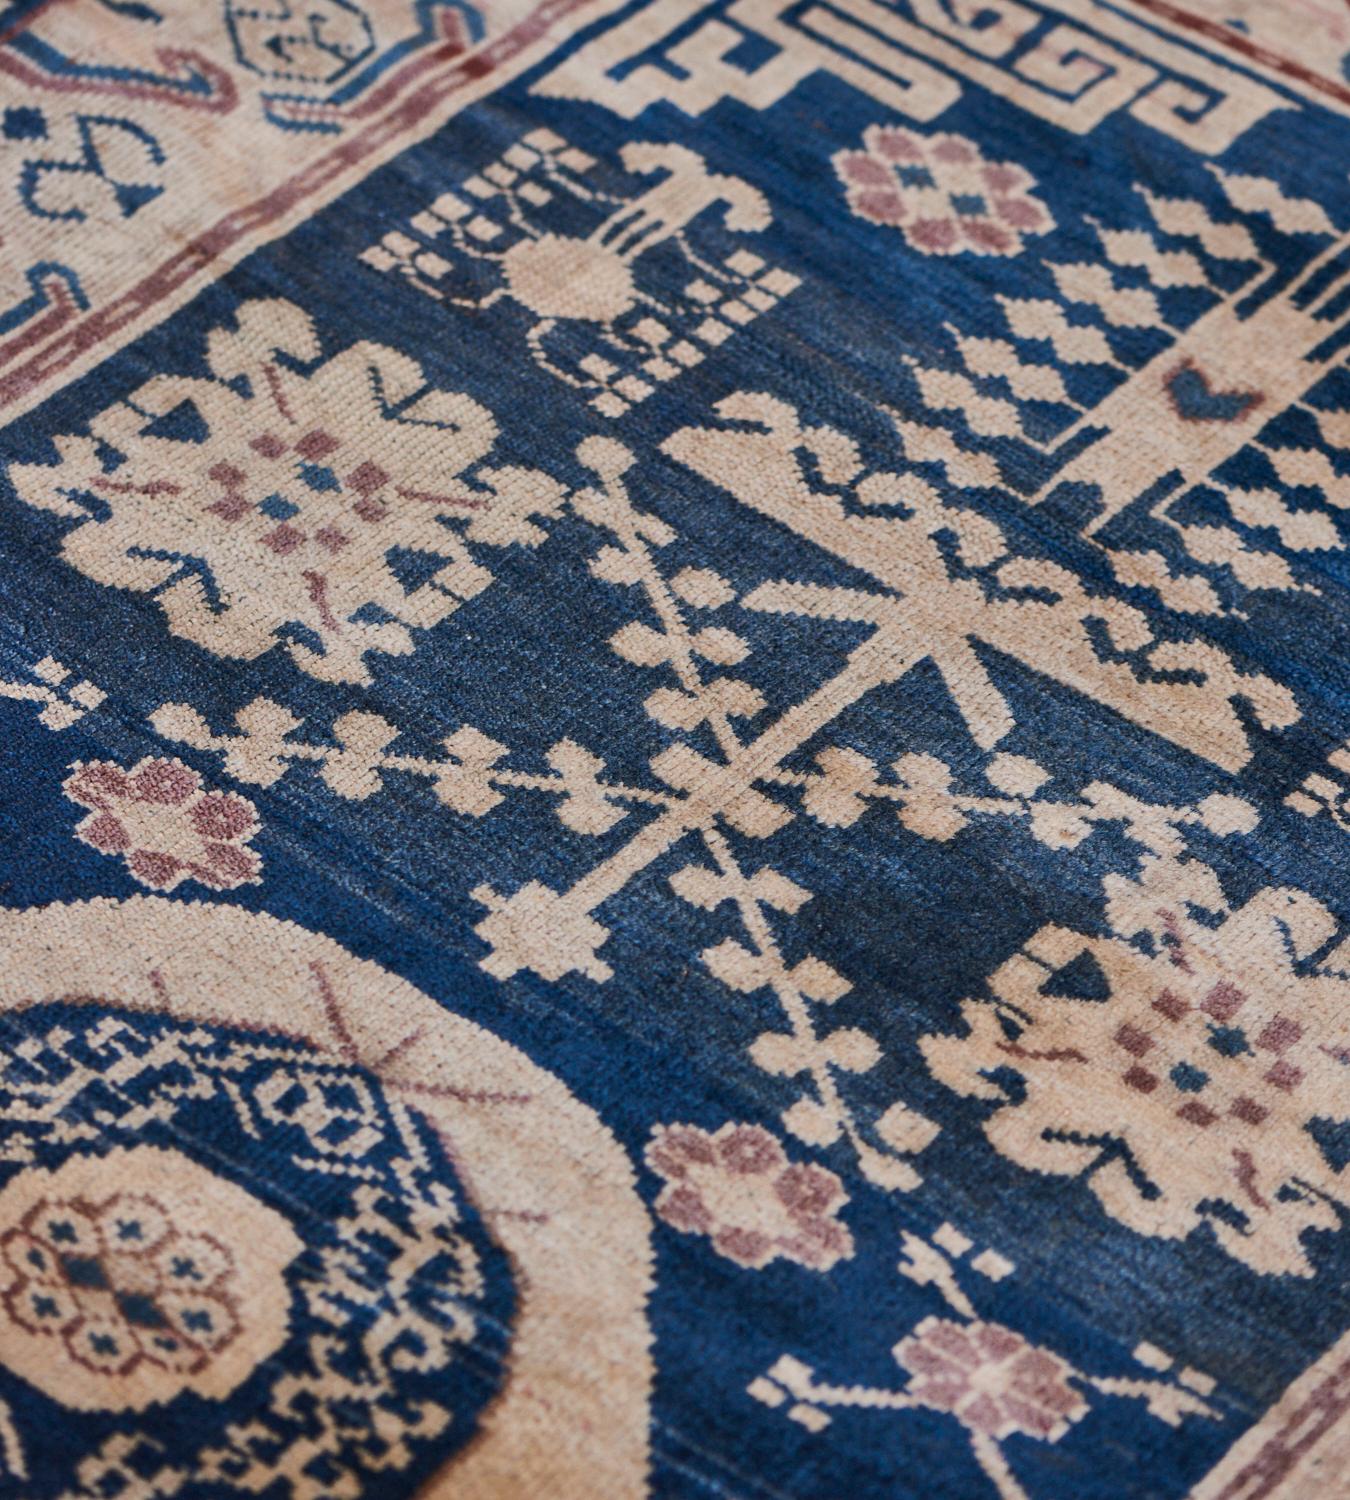 Dieser traditionelle Khotan-Teppich hat ein schattiertes marineblaues Feld, das mit floralen Sprays, hakenförmigen Blumenmotiven und anderen verheißungsvollen Mustern um ein zentrales beigefarbenes Rondell verstreut ist, das eine fließende Ranke um